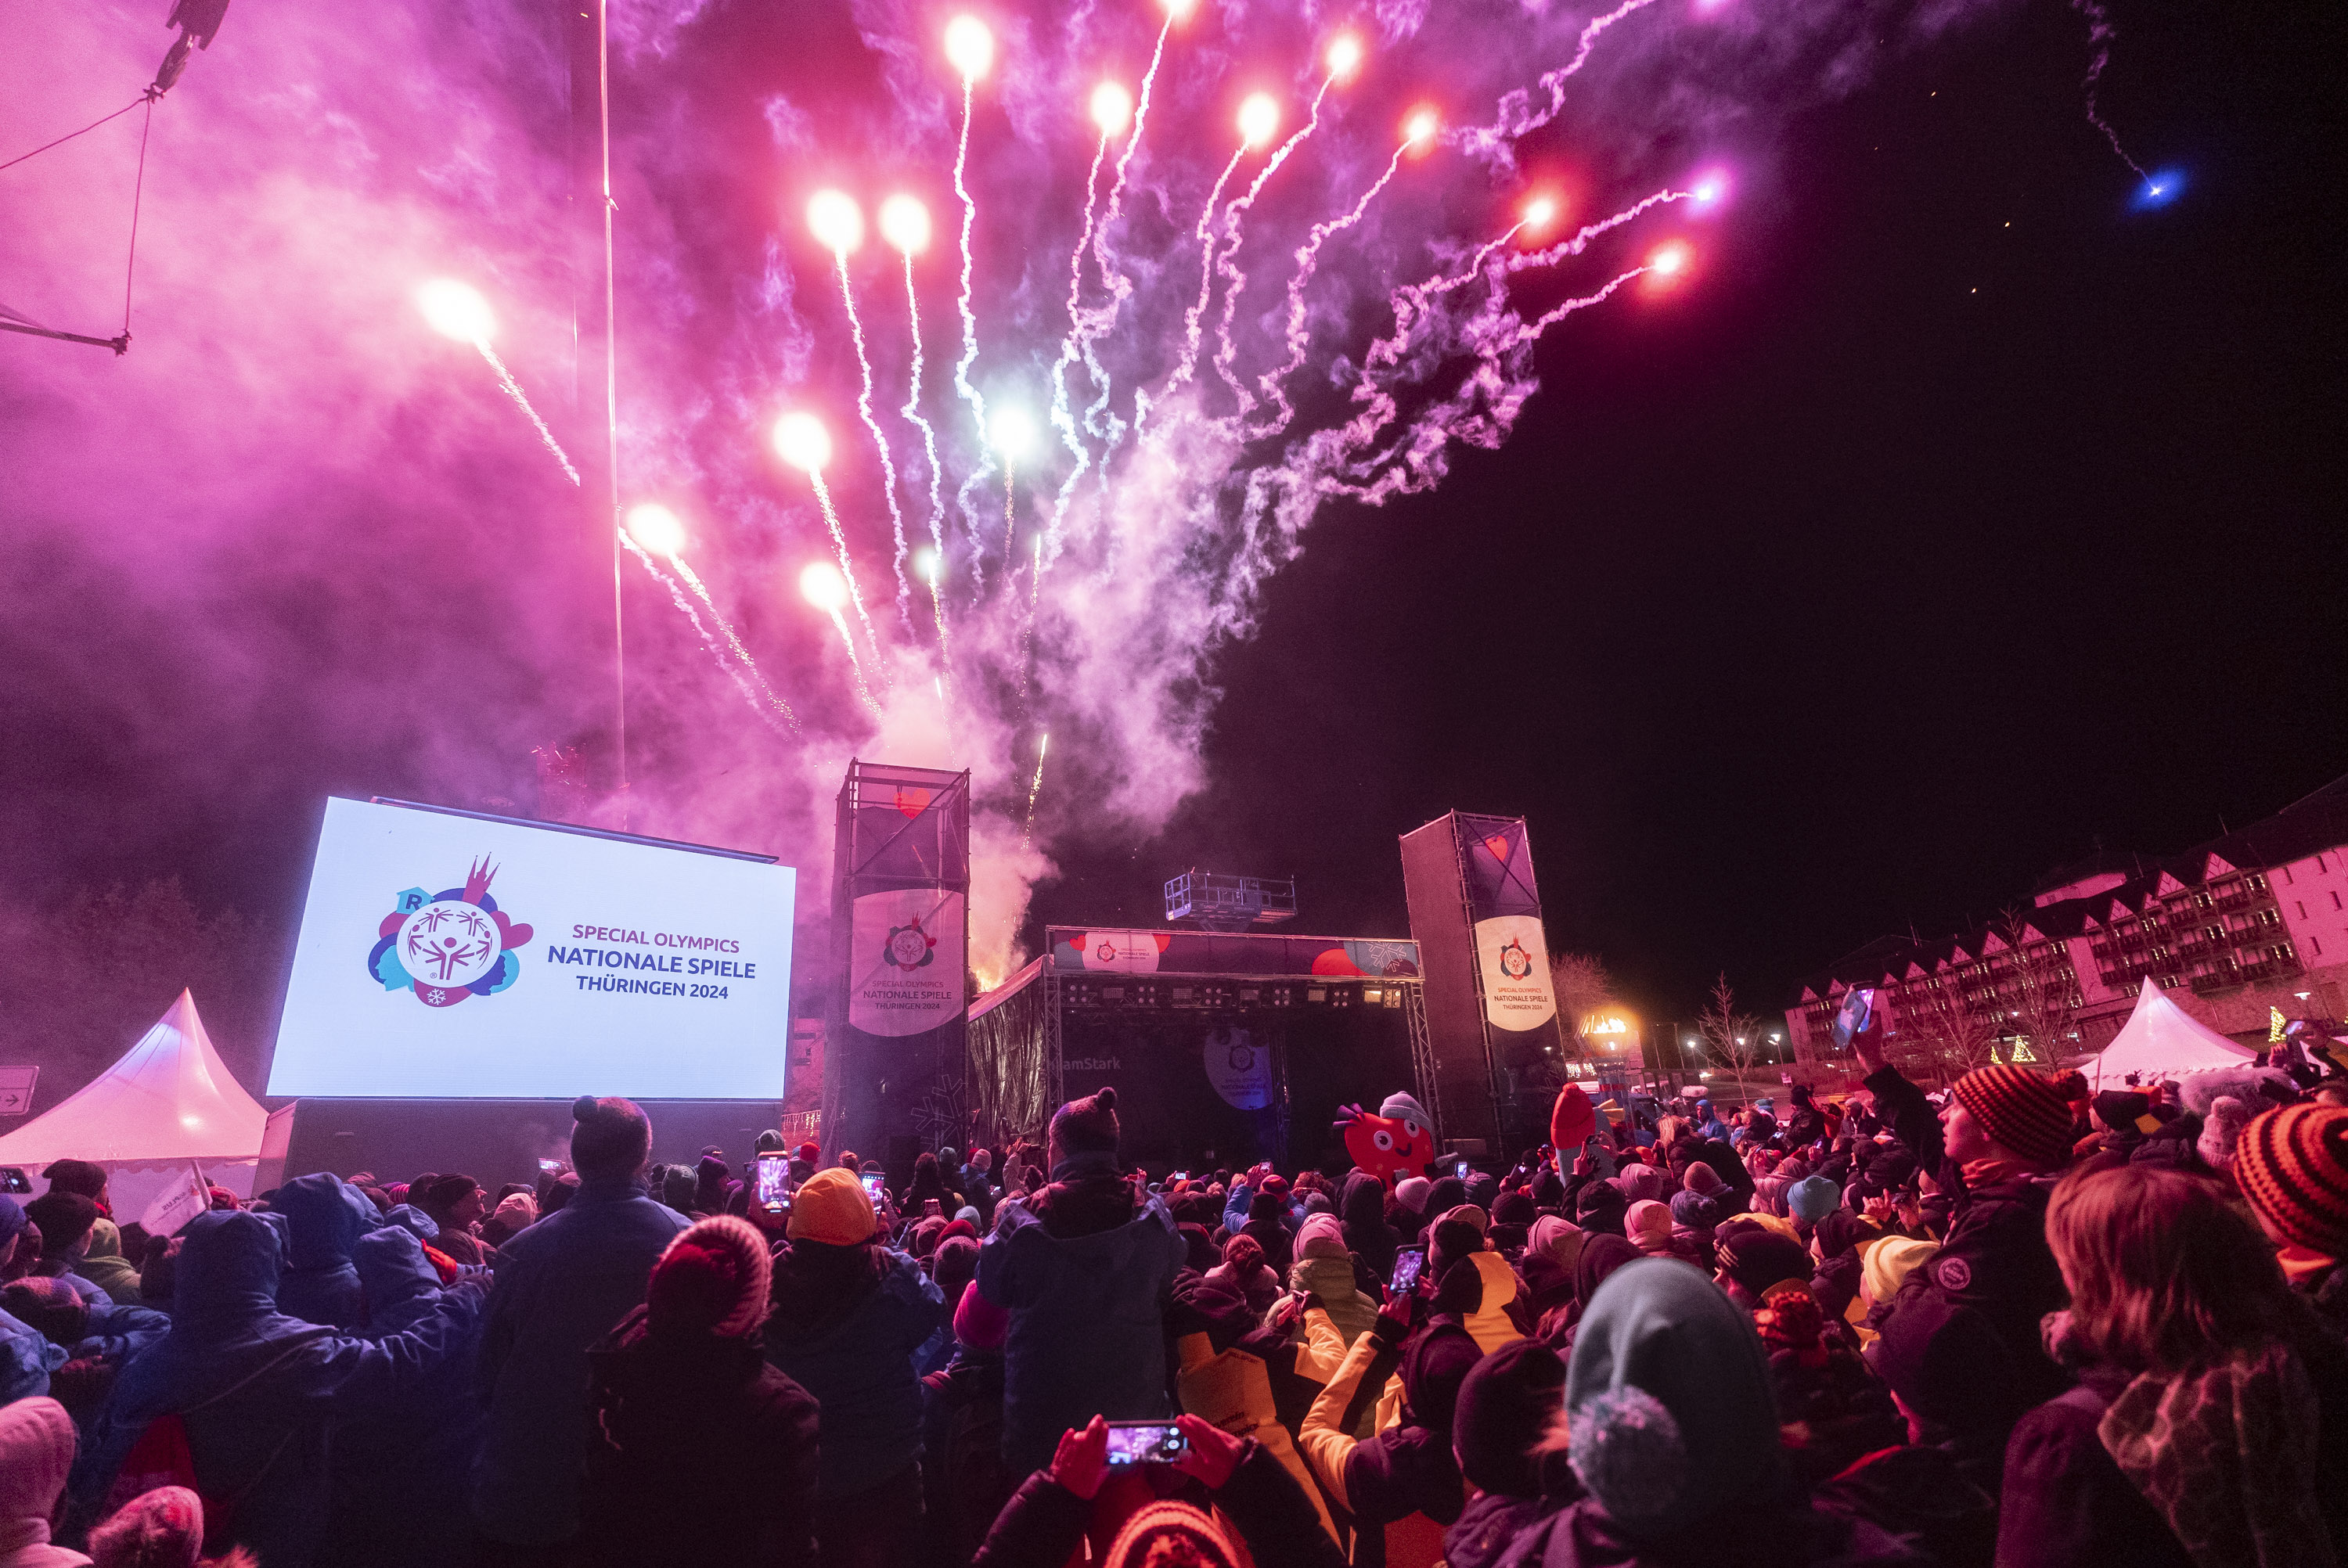 Ein Feuerwerk im Himmel hinter einer Bühne, davor eine Menschenmenge und eine Leinwand mit dem Logo der Spiele